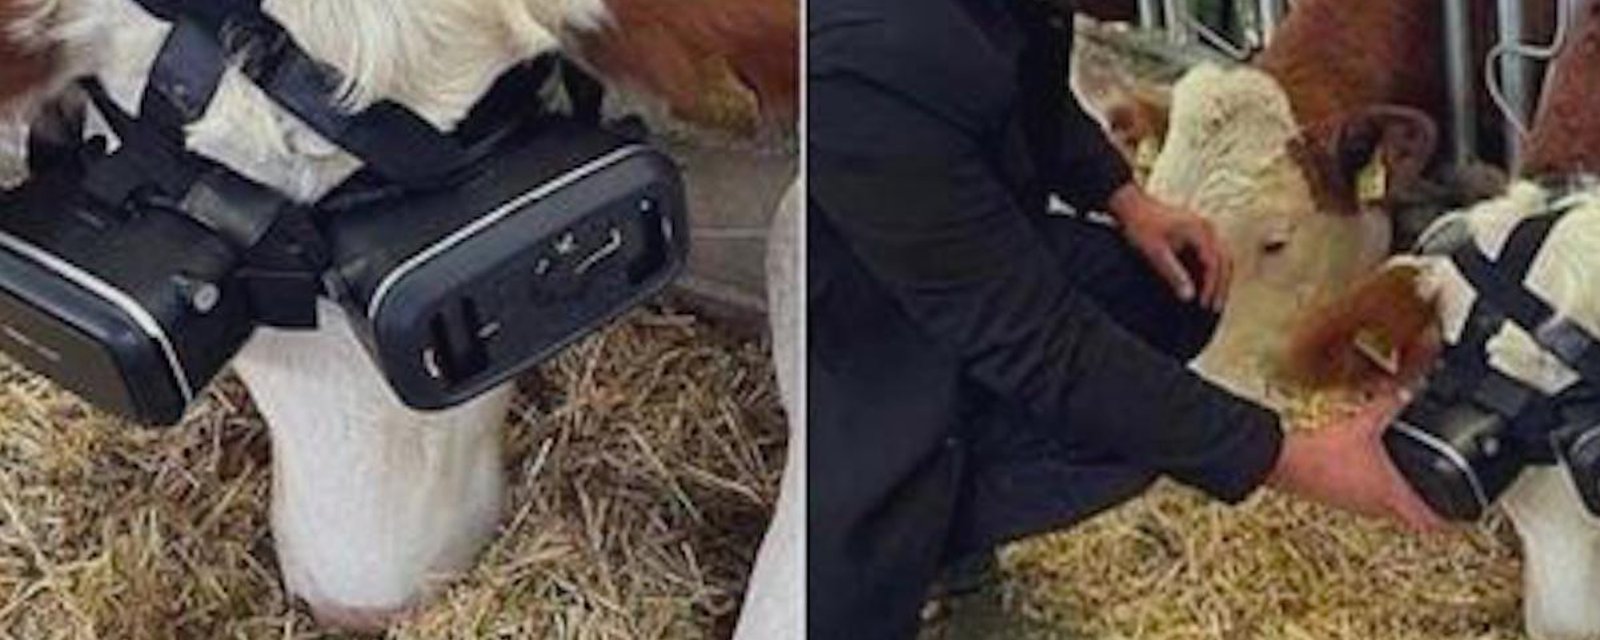 Insolite: Il met des lunettes de réalité virtuelle à ses vaches pour récolter plus de lait